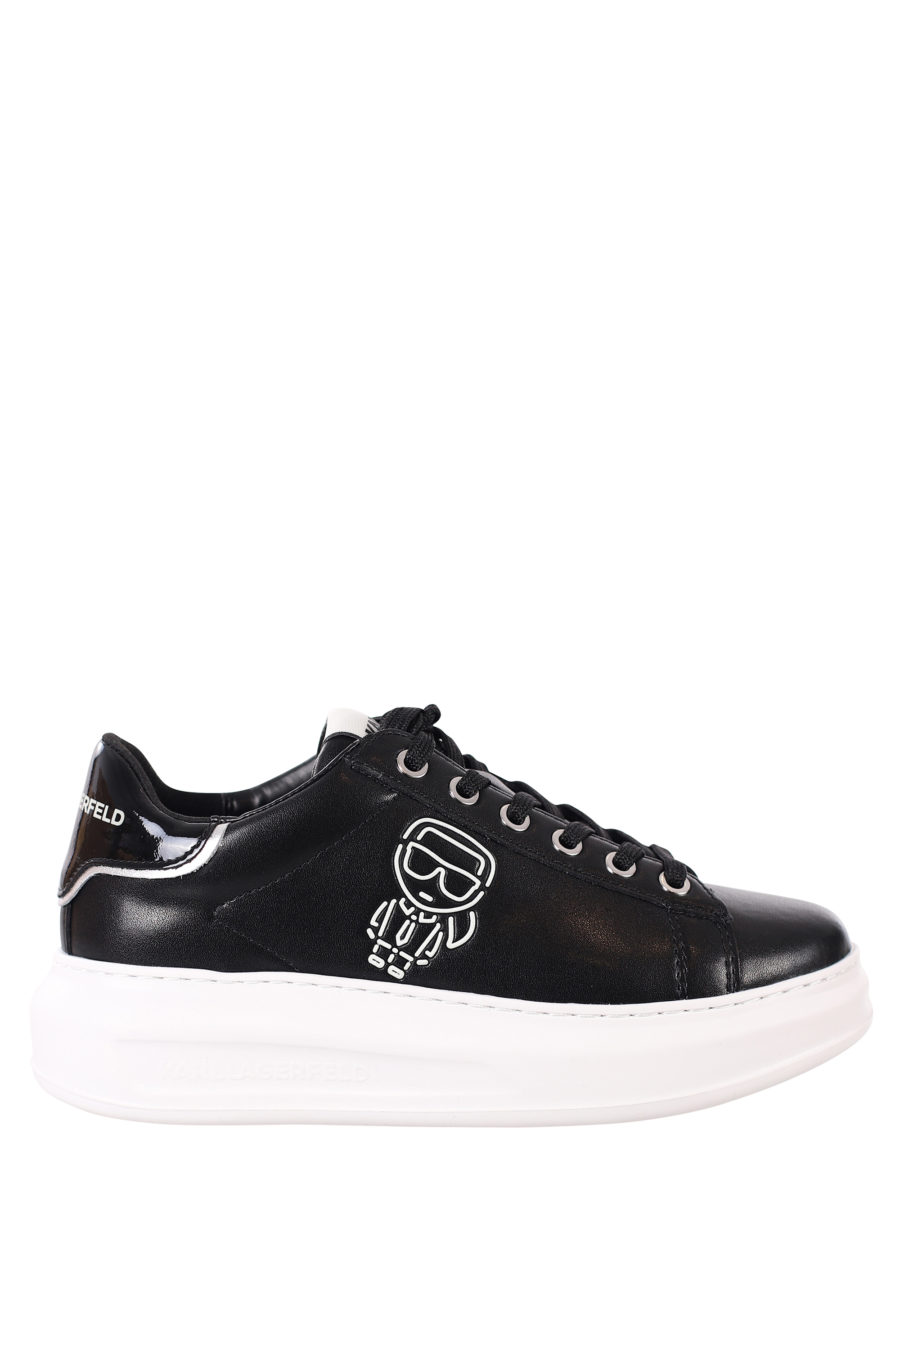 Zapatillas negras con logo en silueta blanco - IMG 0404